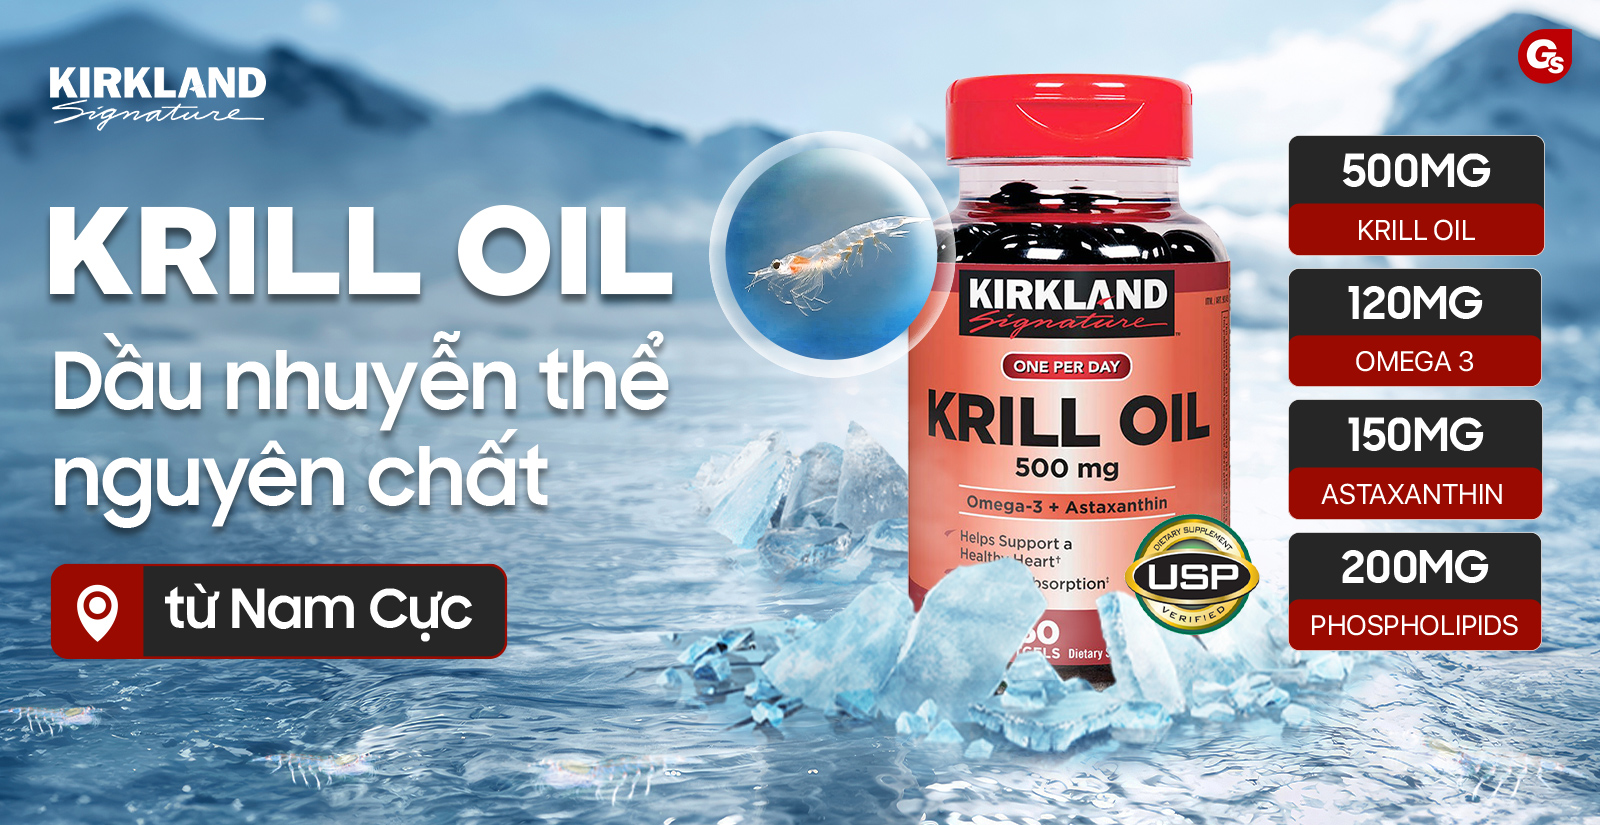 kirkland-krill-oil-gymstore